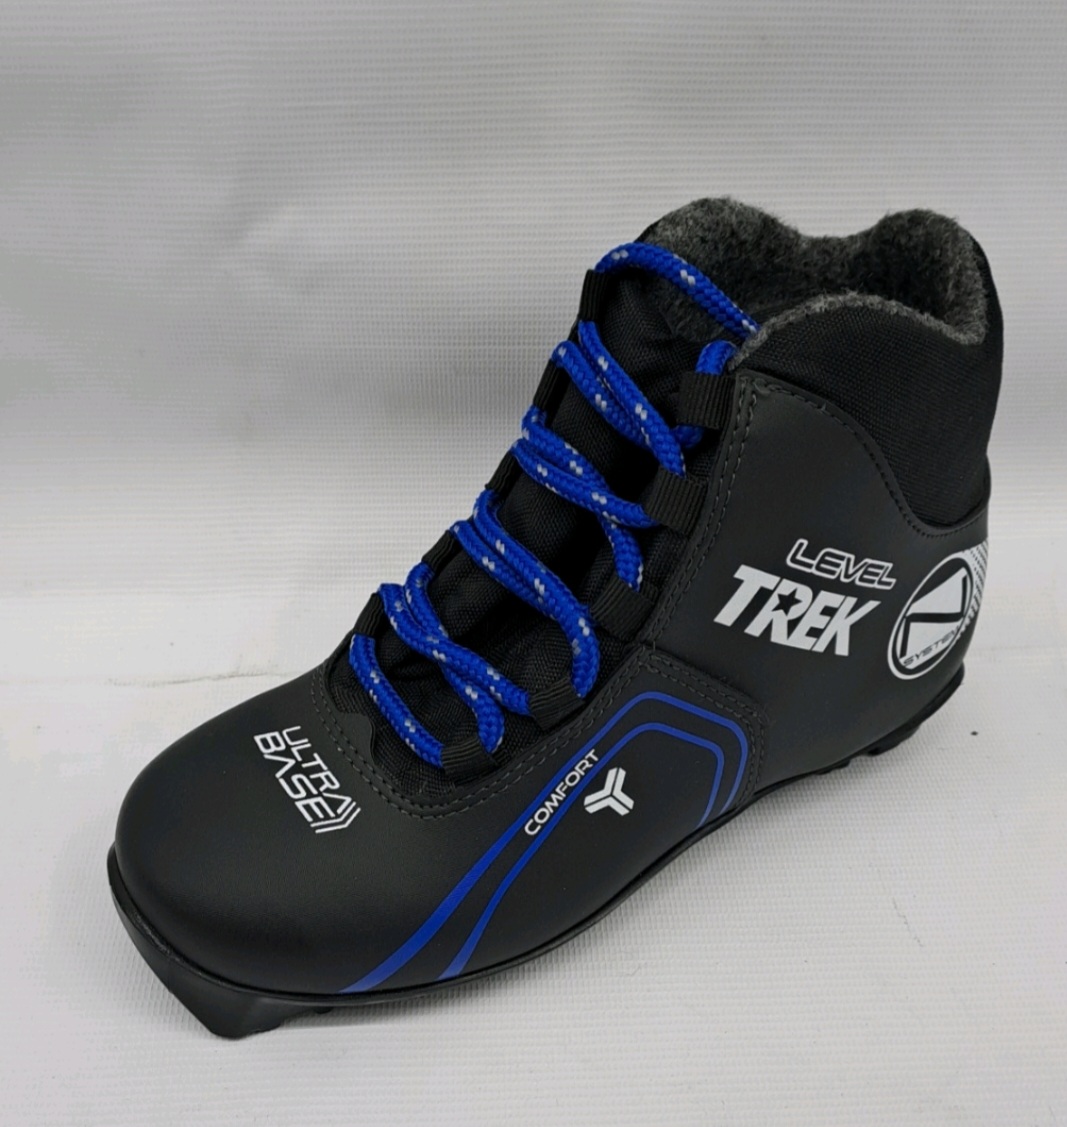 Ботинки лыжные TREK Level 3 черный лого синий RU41, EU42, CM26,5                                           